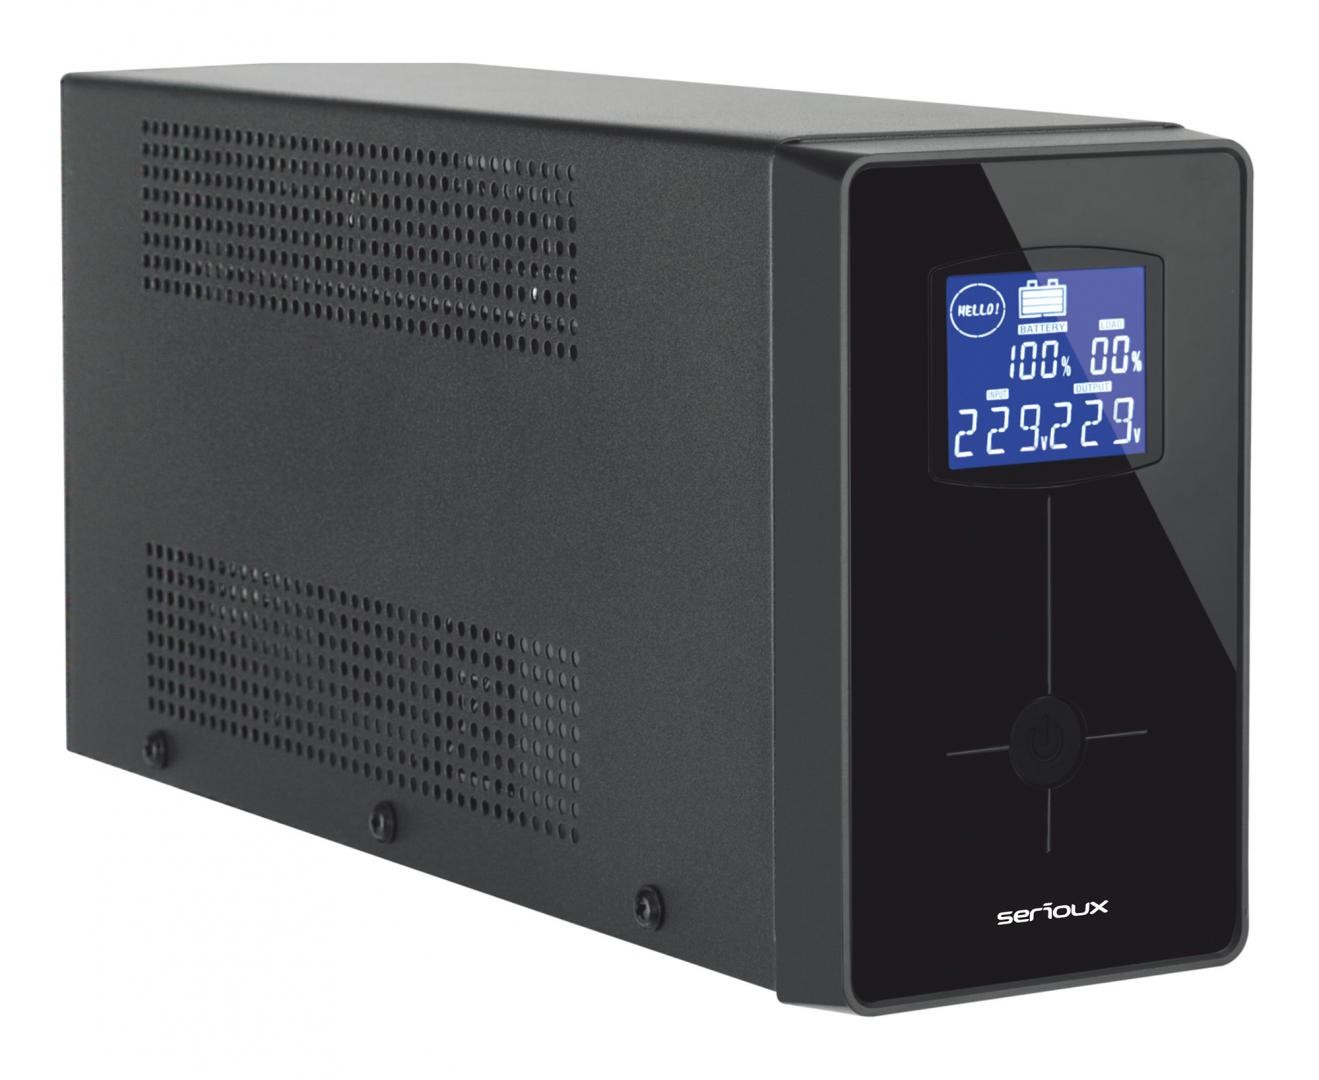 UPS Serioux Line Interactive 600LI, ecran LCD, capacitate 600VA/360W, 2 prize Schuko , baterie 12 V / 7.0 Ah x 1, timp mediu de